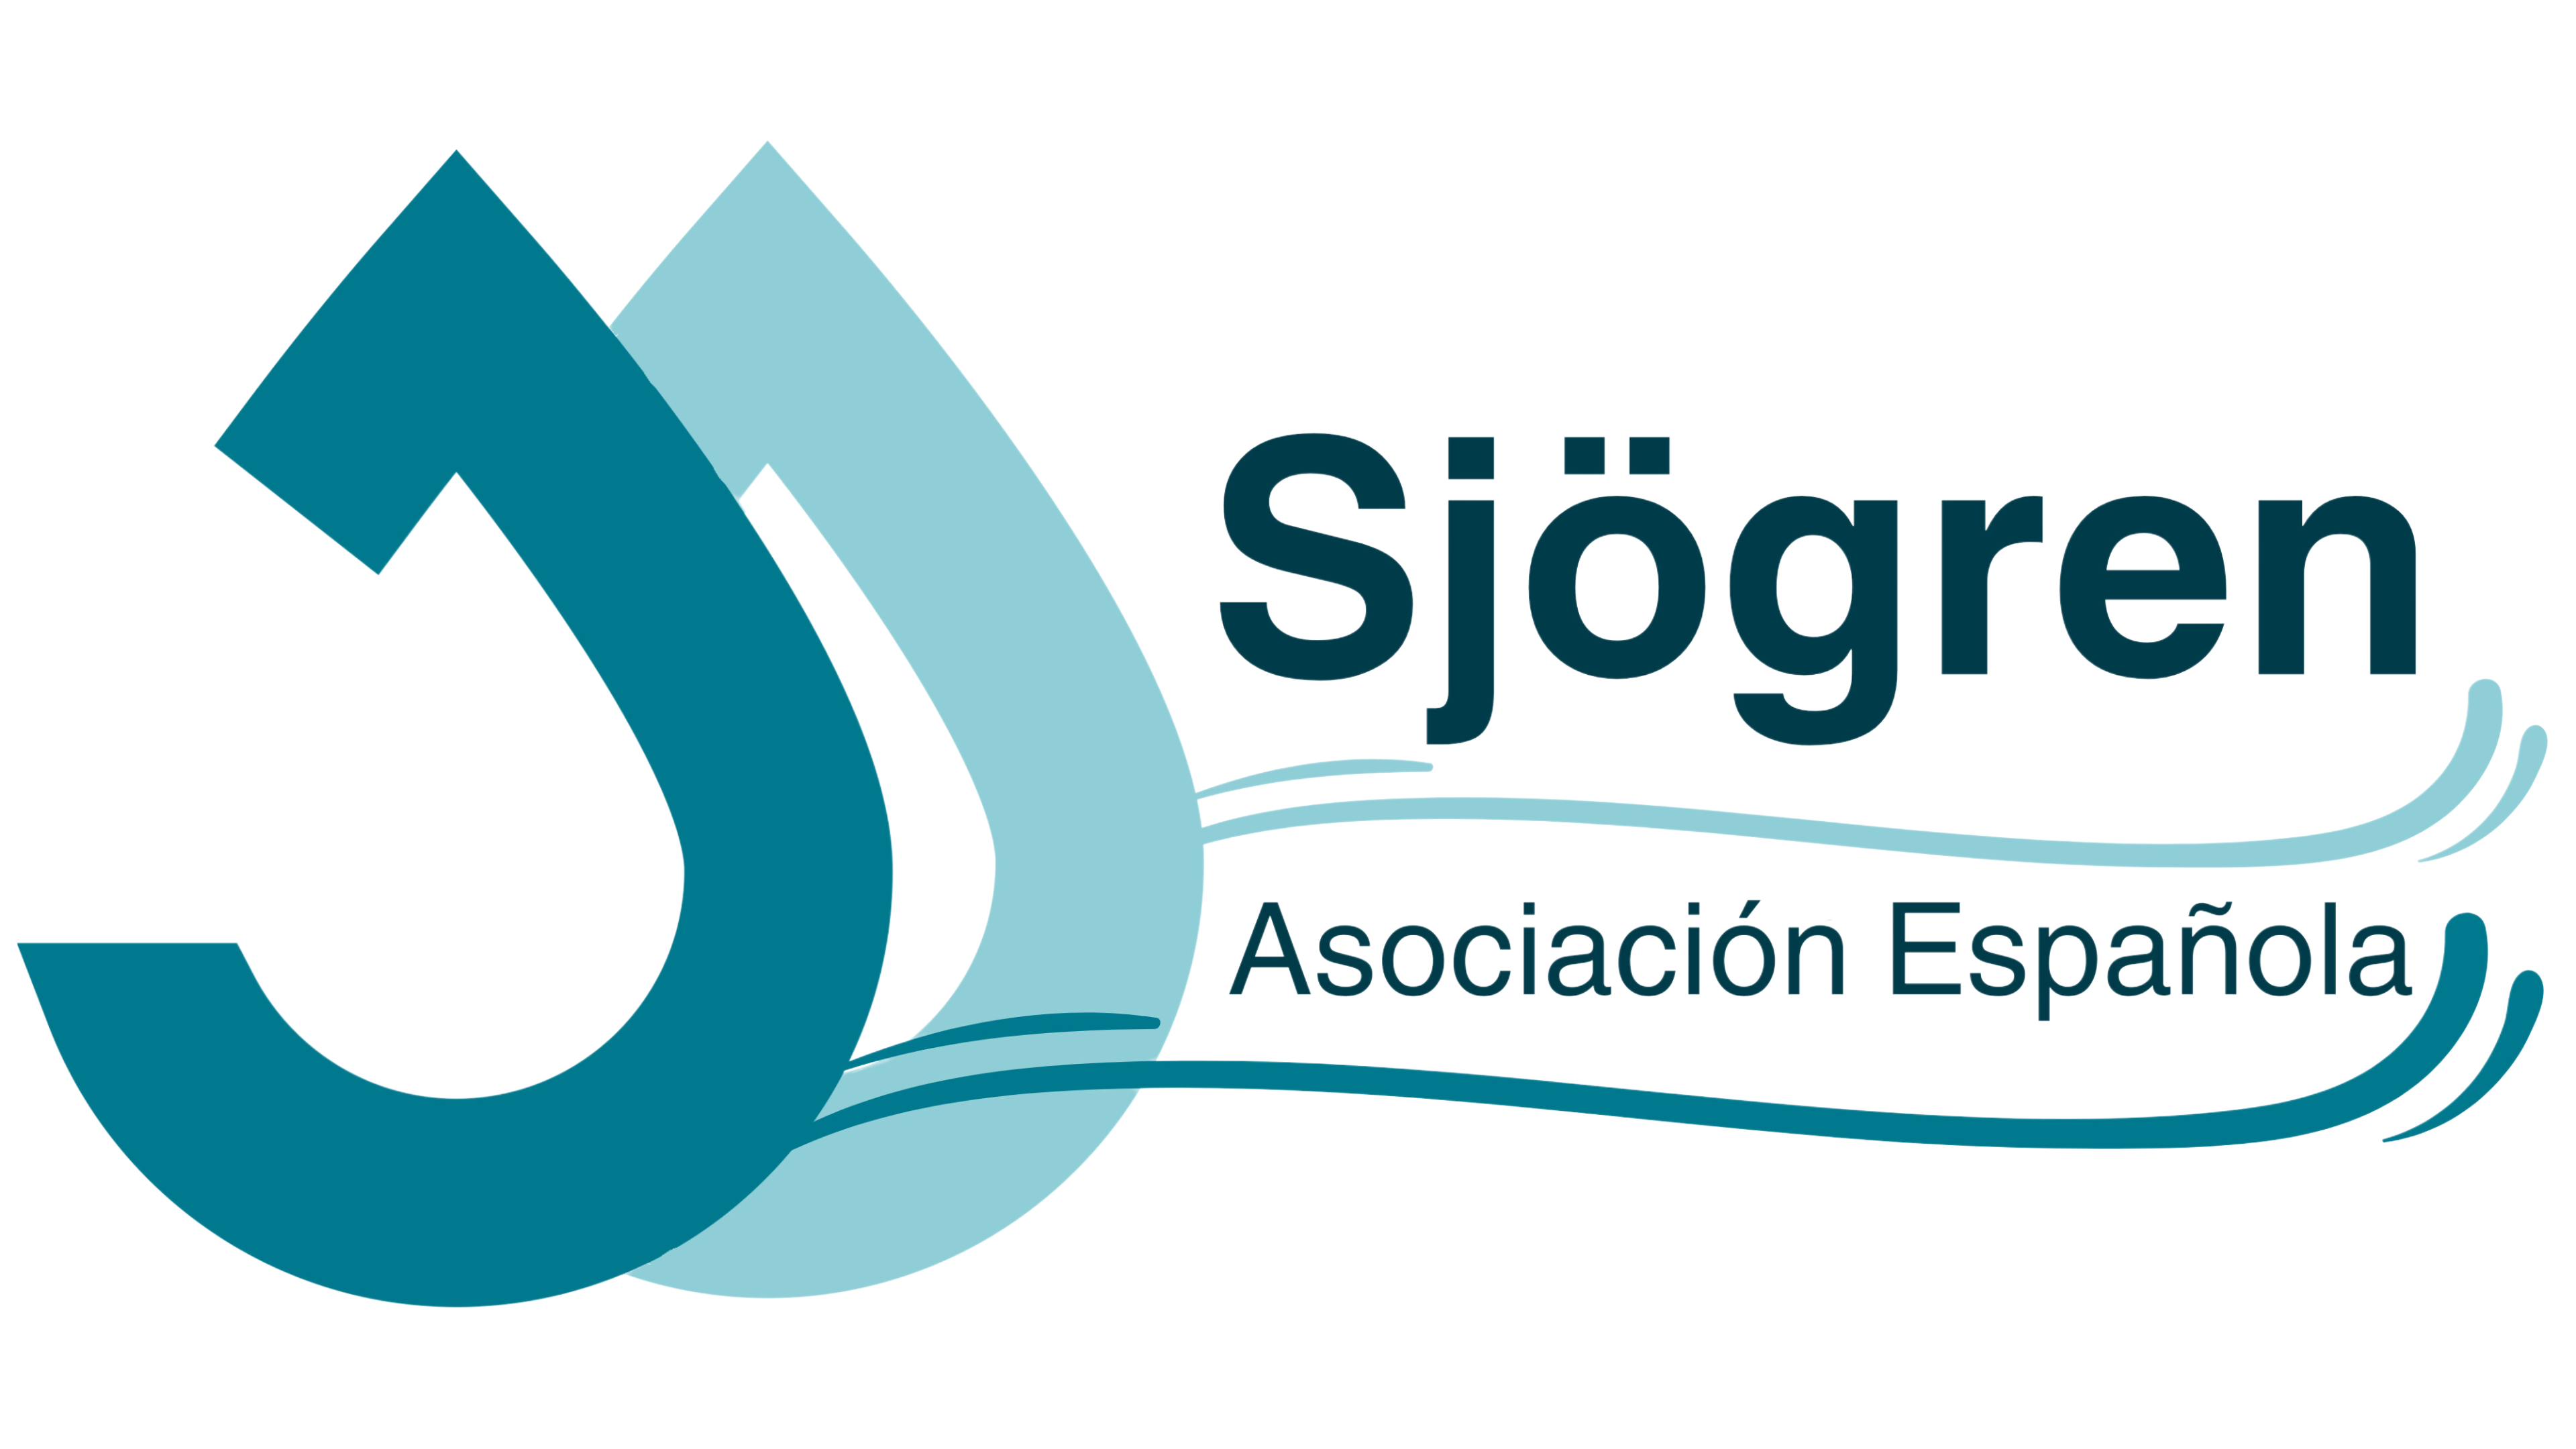 Asociación española de Sjögren